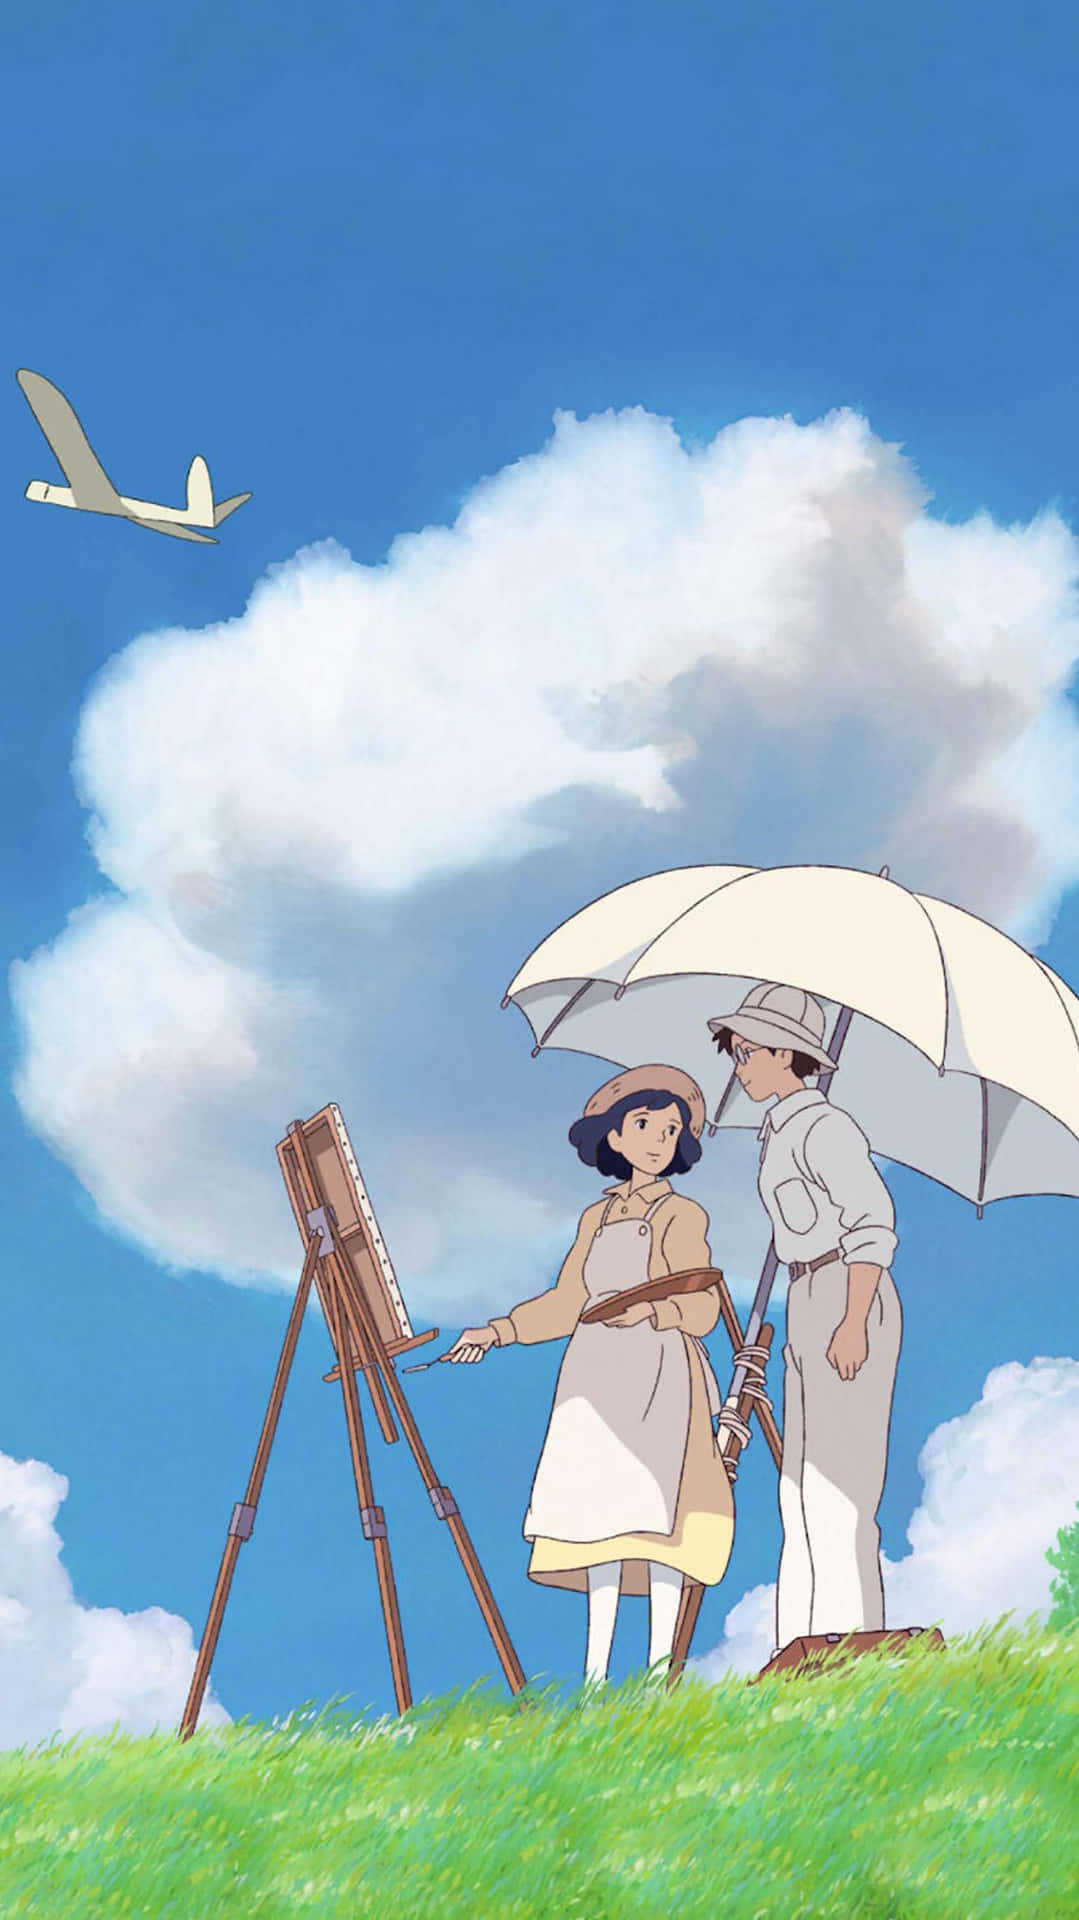 Tauchensie Ein In Die Magische Welt Von Studio Ghibli Mit Diesem Einzigartigen Handy-design Wallpaper